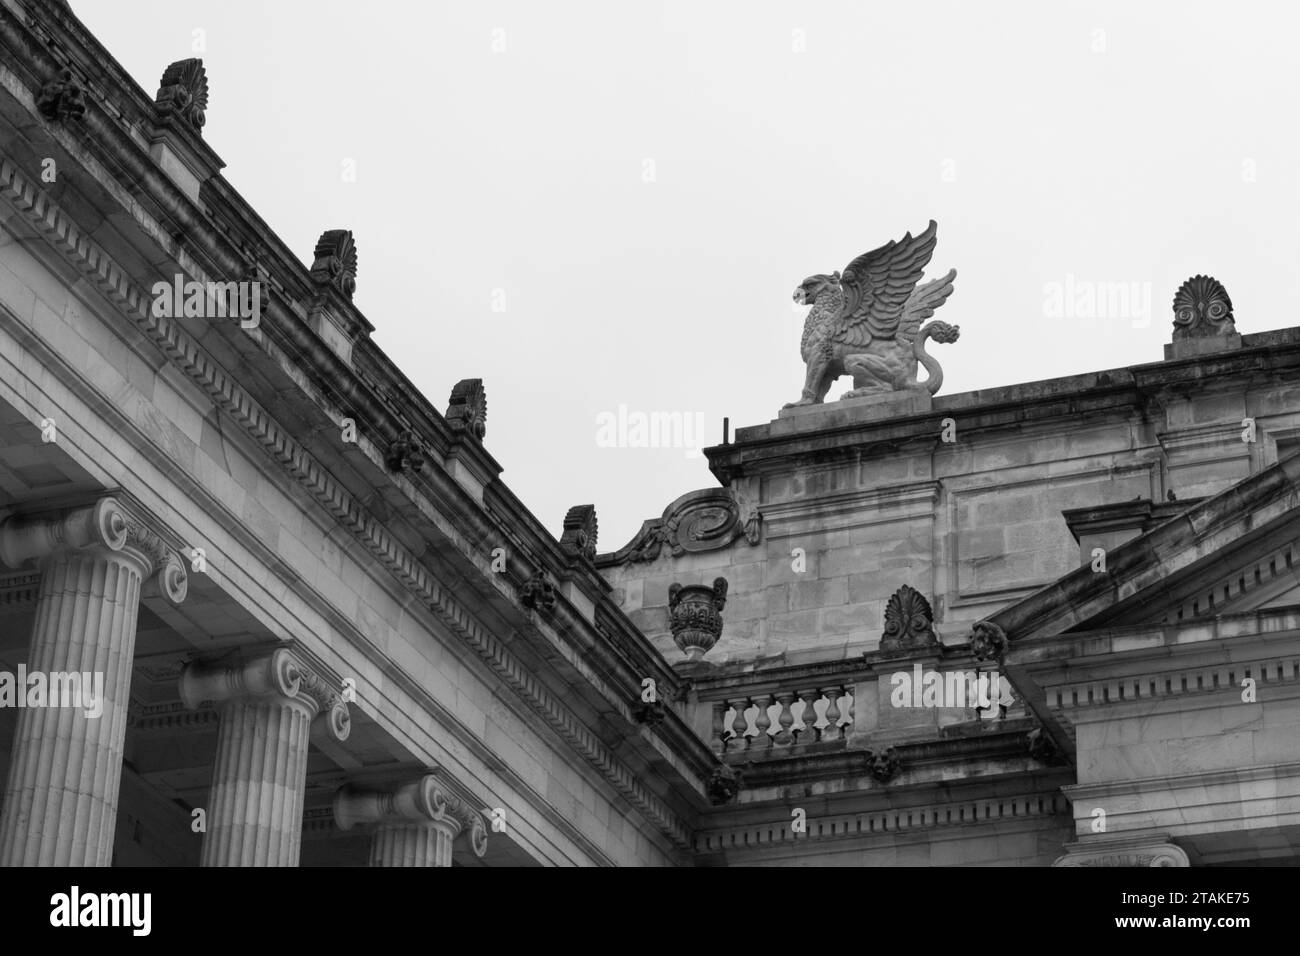 Details eines Gargoyles an der Spitze eines neoklassizistischen Architektur kolumbianischen Kapitolgebäudes Schwarz-weiß-Fotografie Stockfoto